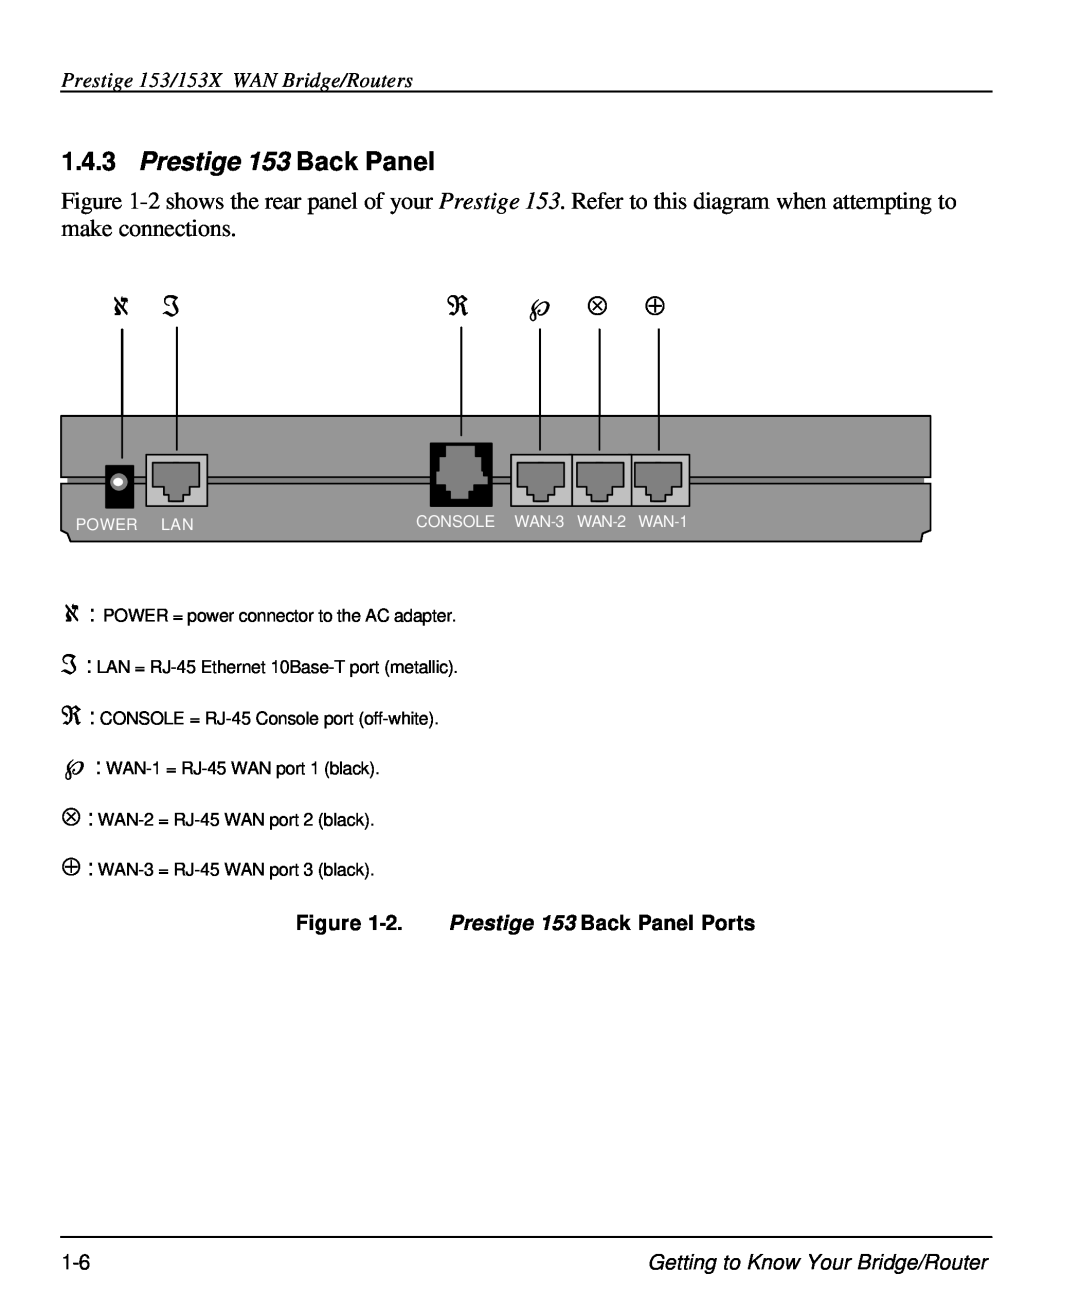 ZyXEL Communications user manual ℜ ℘ ⊗ ⊕, Prestige 153 Back Panel, Prestige 153/153X WAN Bridge/Routers 